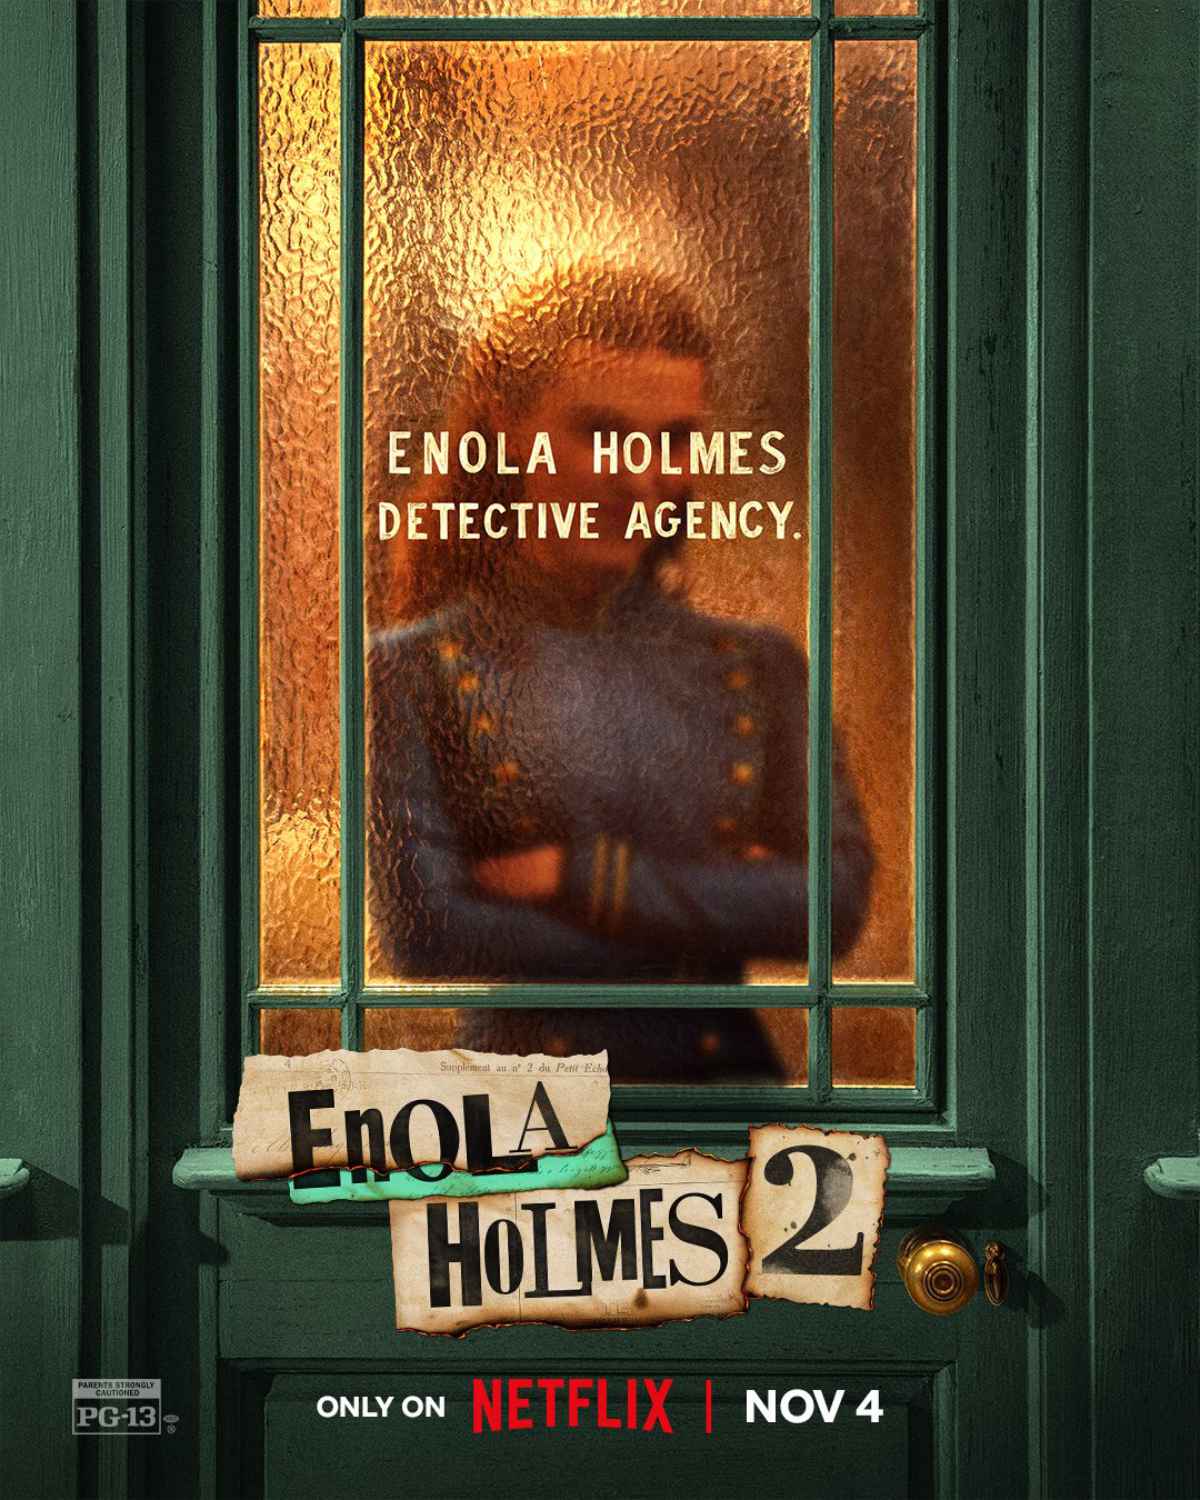 Netflix TUDUM - Enola Holmes 2